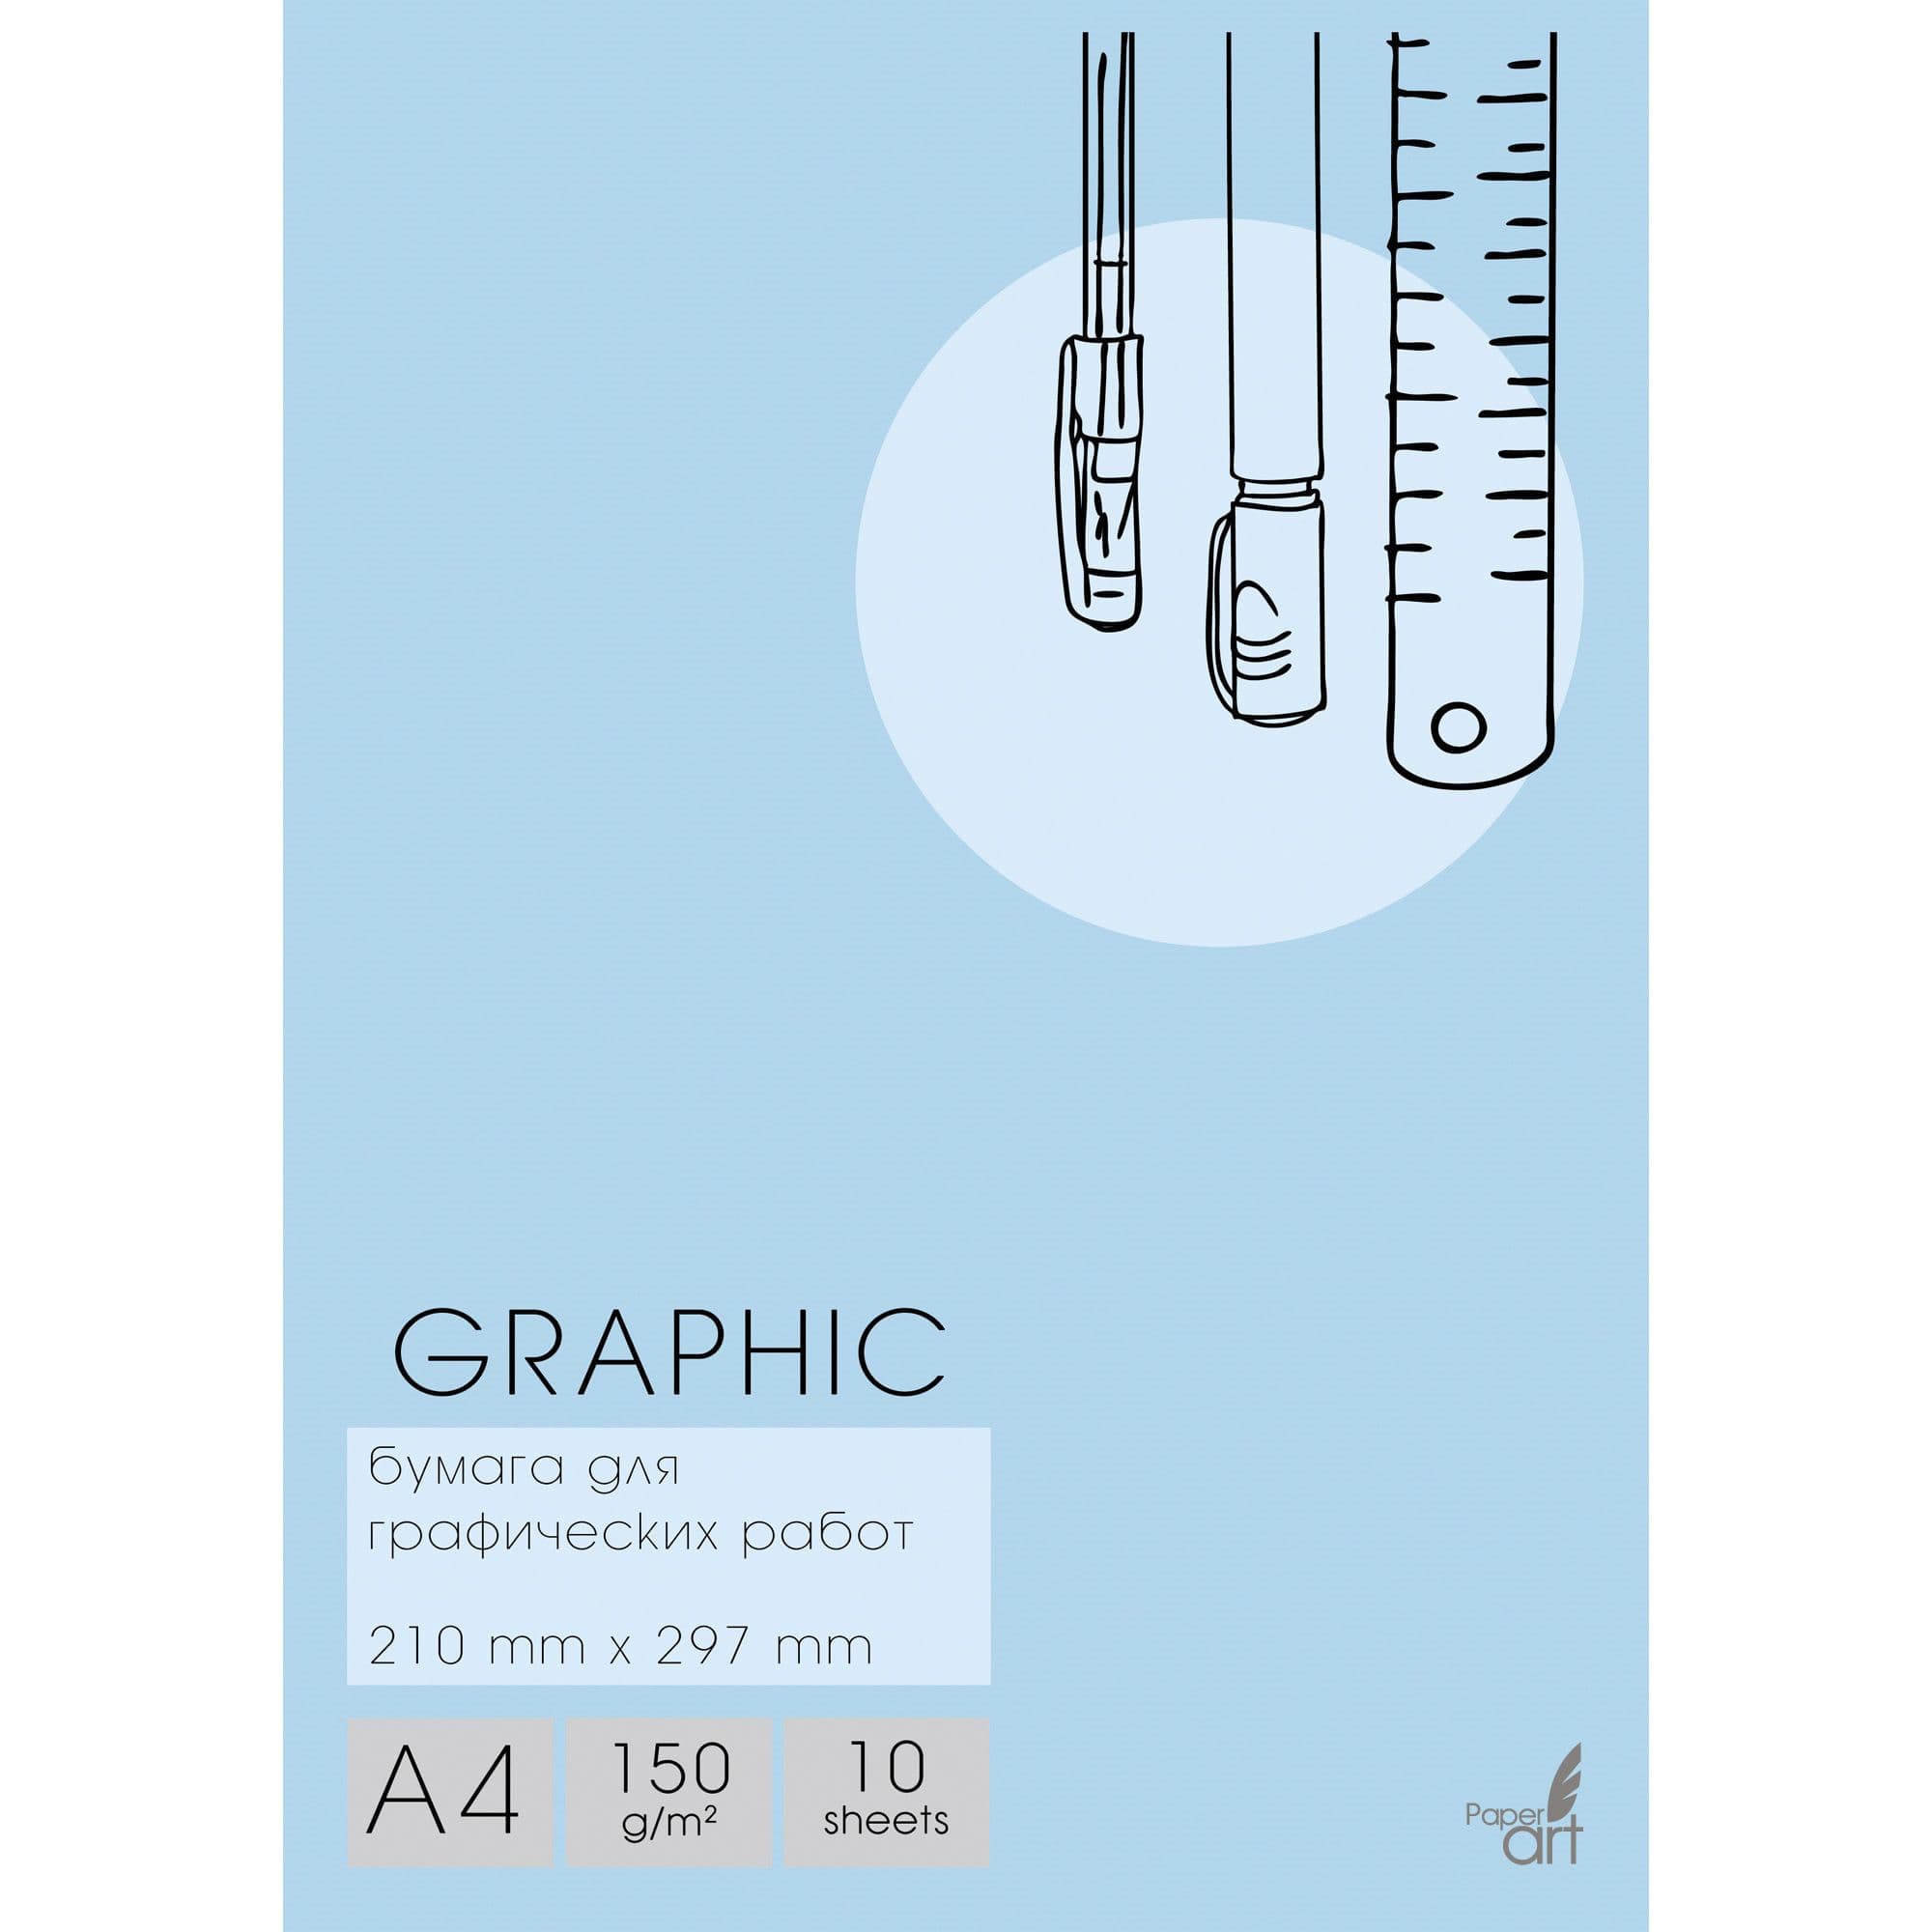 Набор бумаги для графических работ А4 10л Graphic, мелован, 150 гр/м, в папке - купить в магазине Кассандра, фото, 4606086453998, 